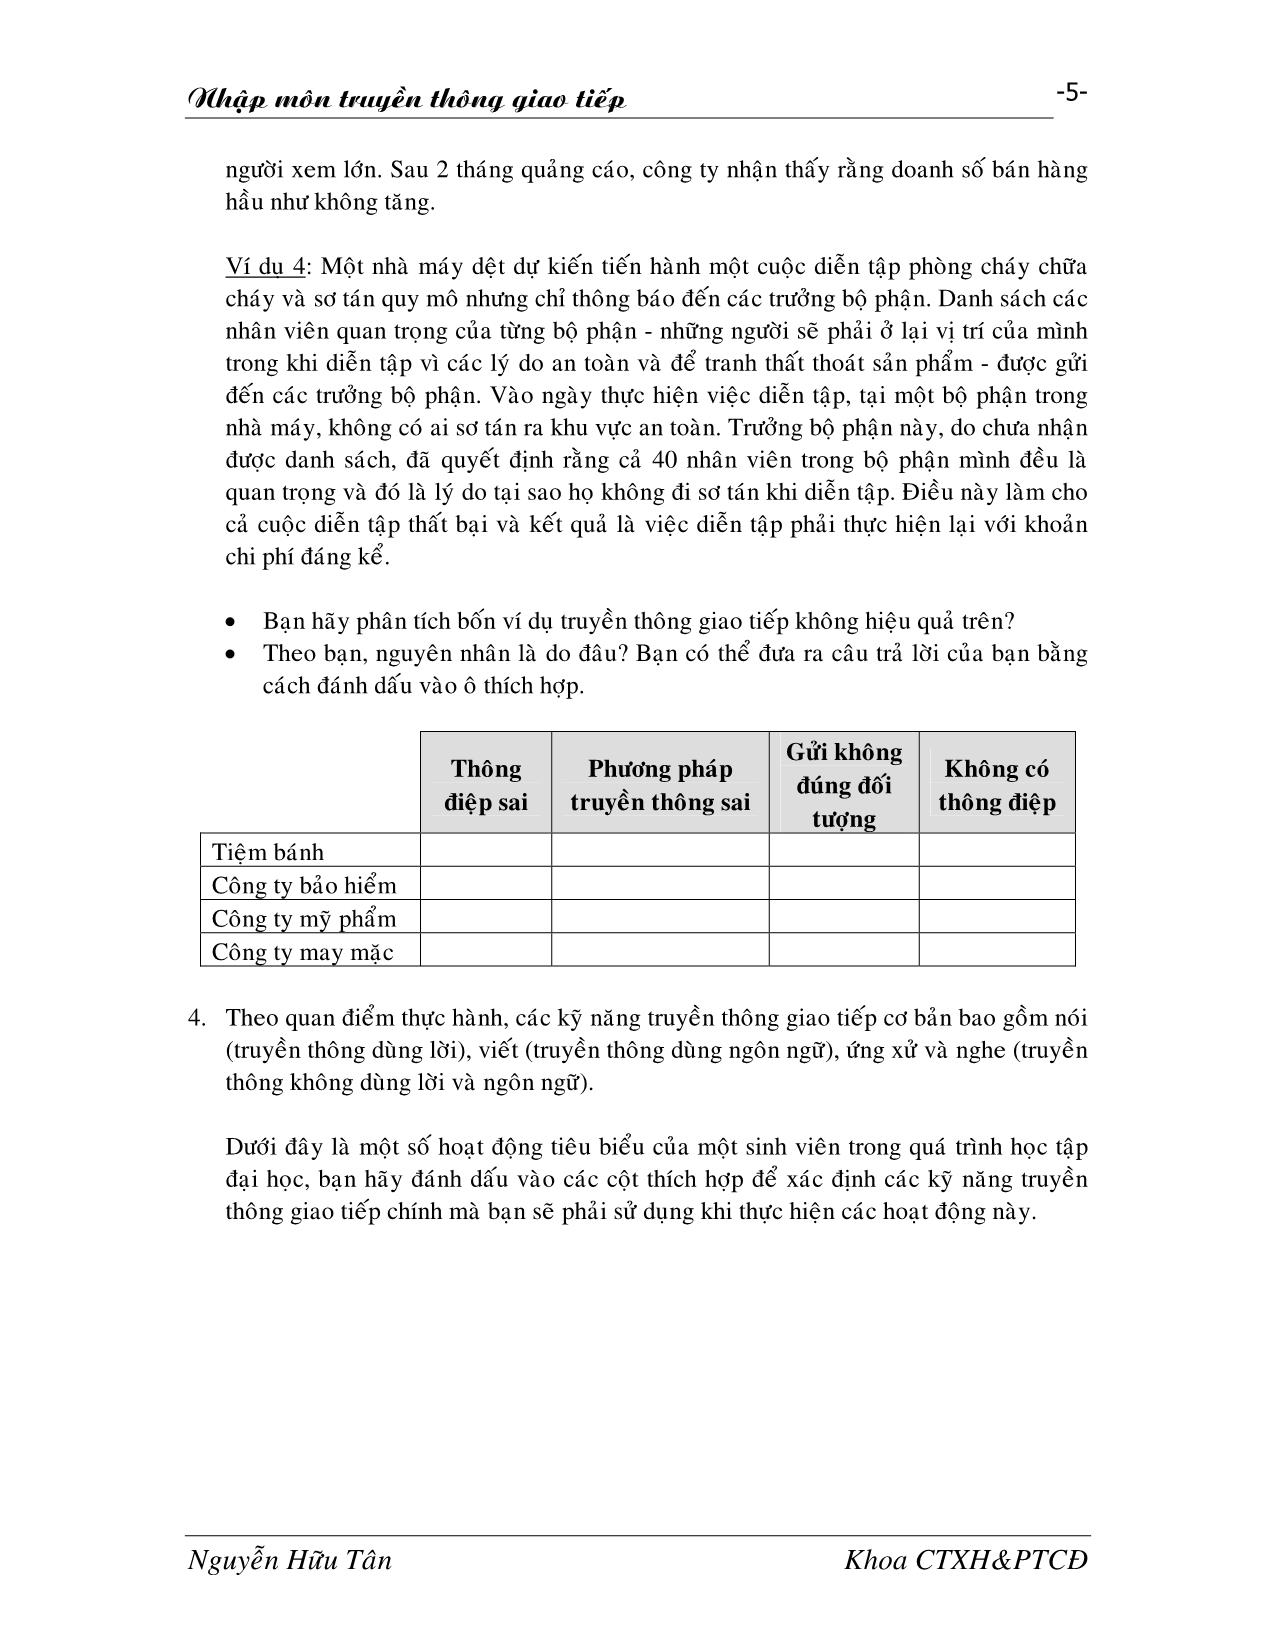 Giáo trình Nhập môn truyền thông giao tiếp trang 5